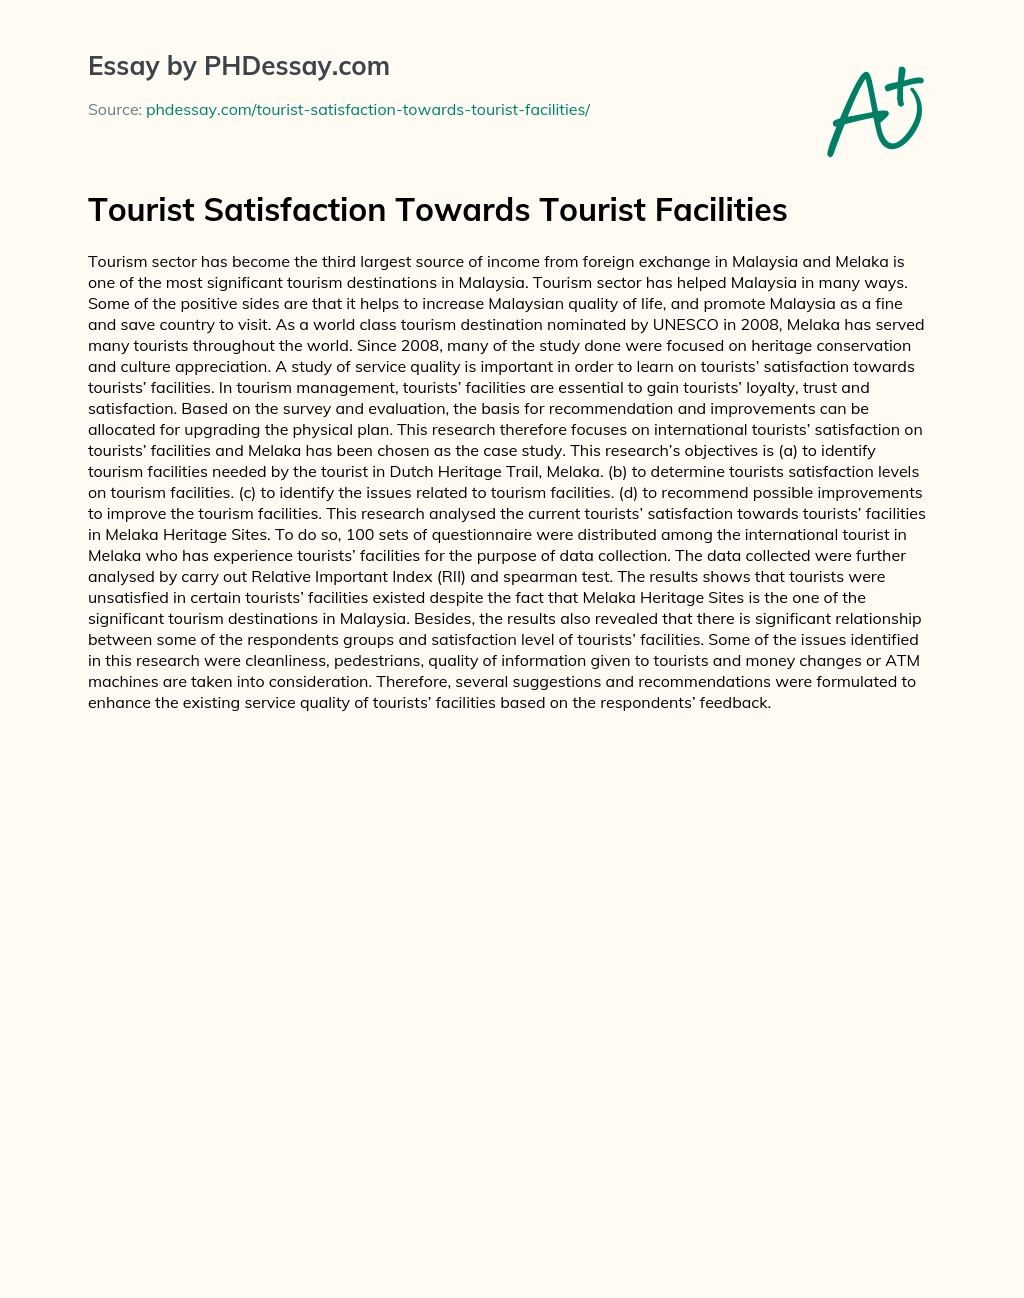 Tourist Satisfaction Towards Tourist Facilities essay